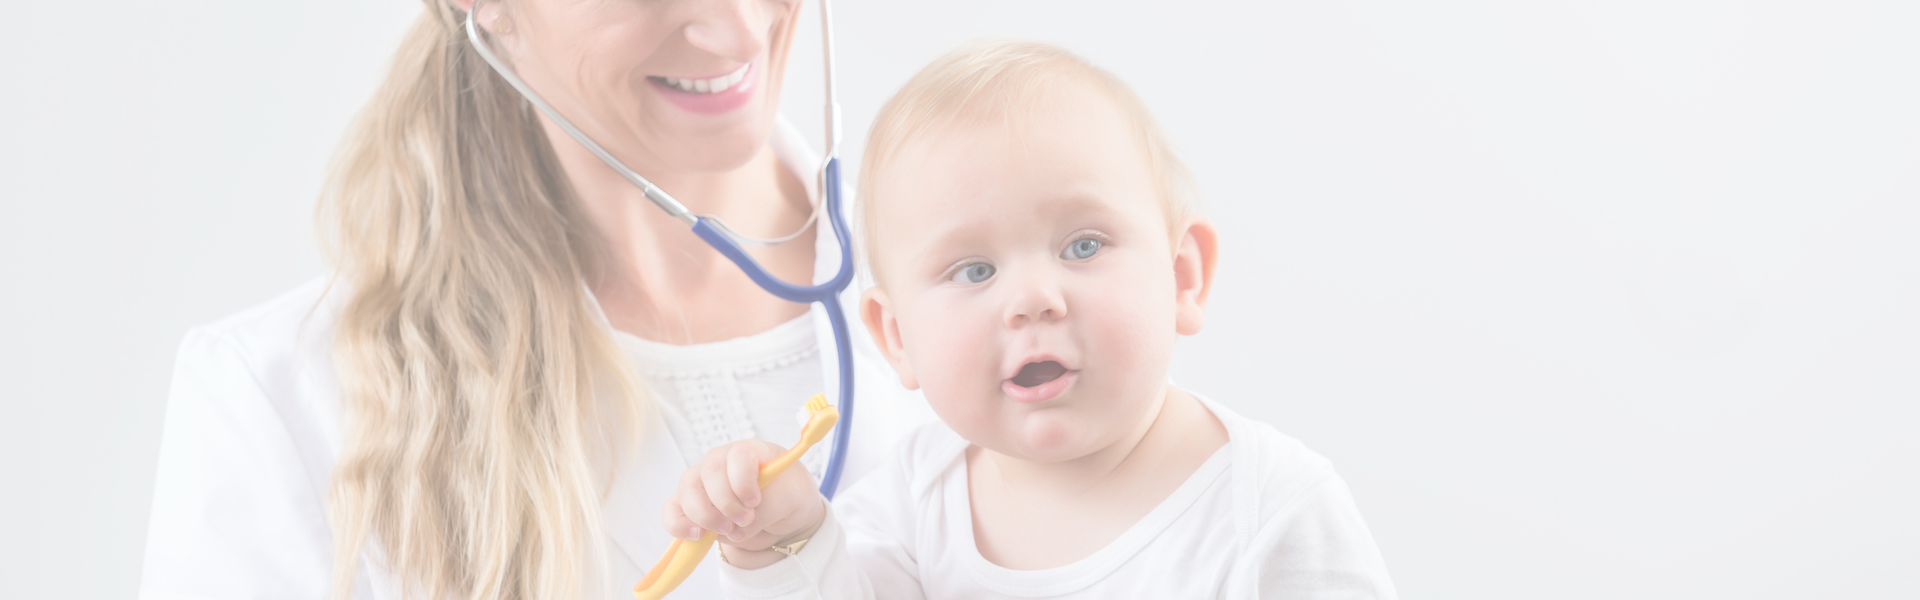 Urgencias Pediatría